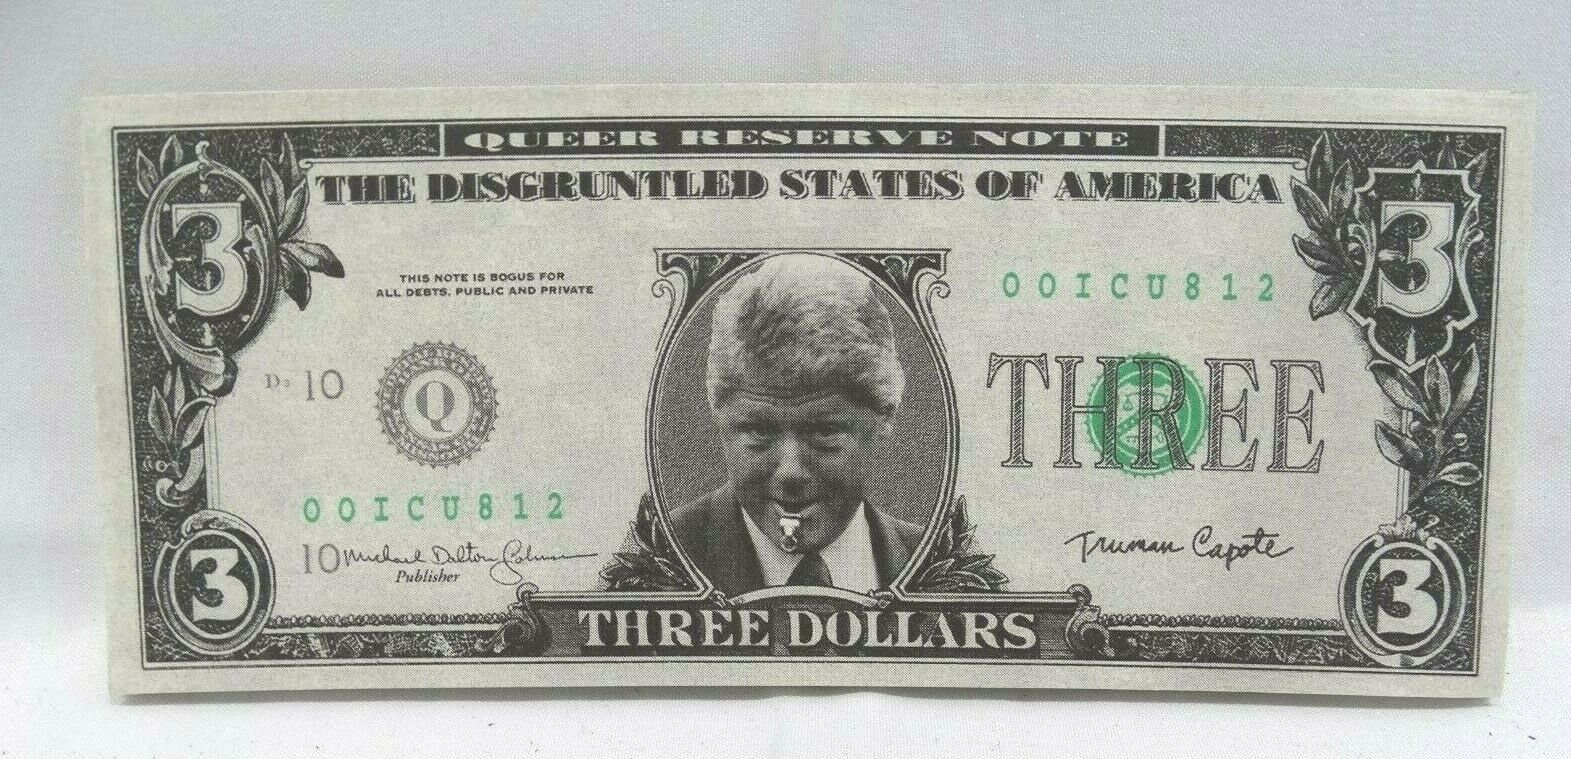 1993 President Bill Clinton $3 dollar bill Slick Times Novelty Money